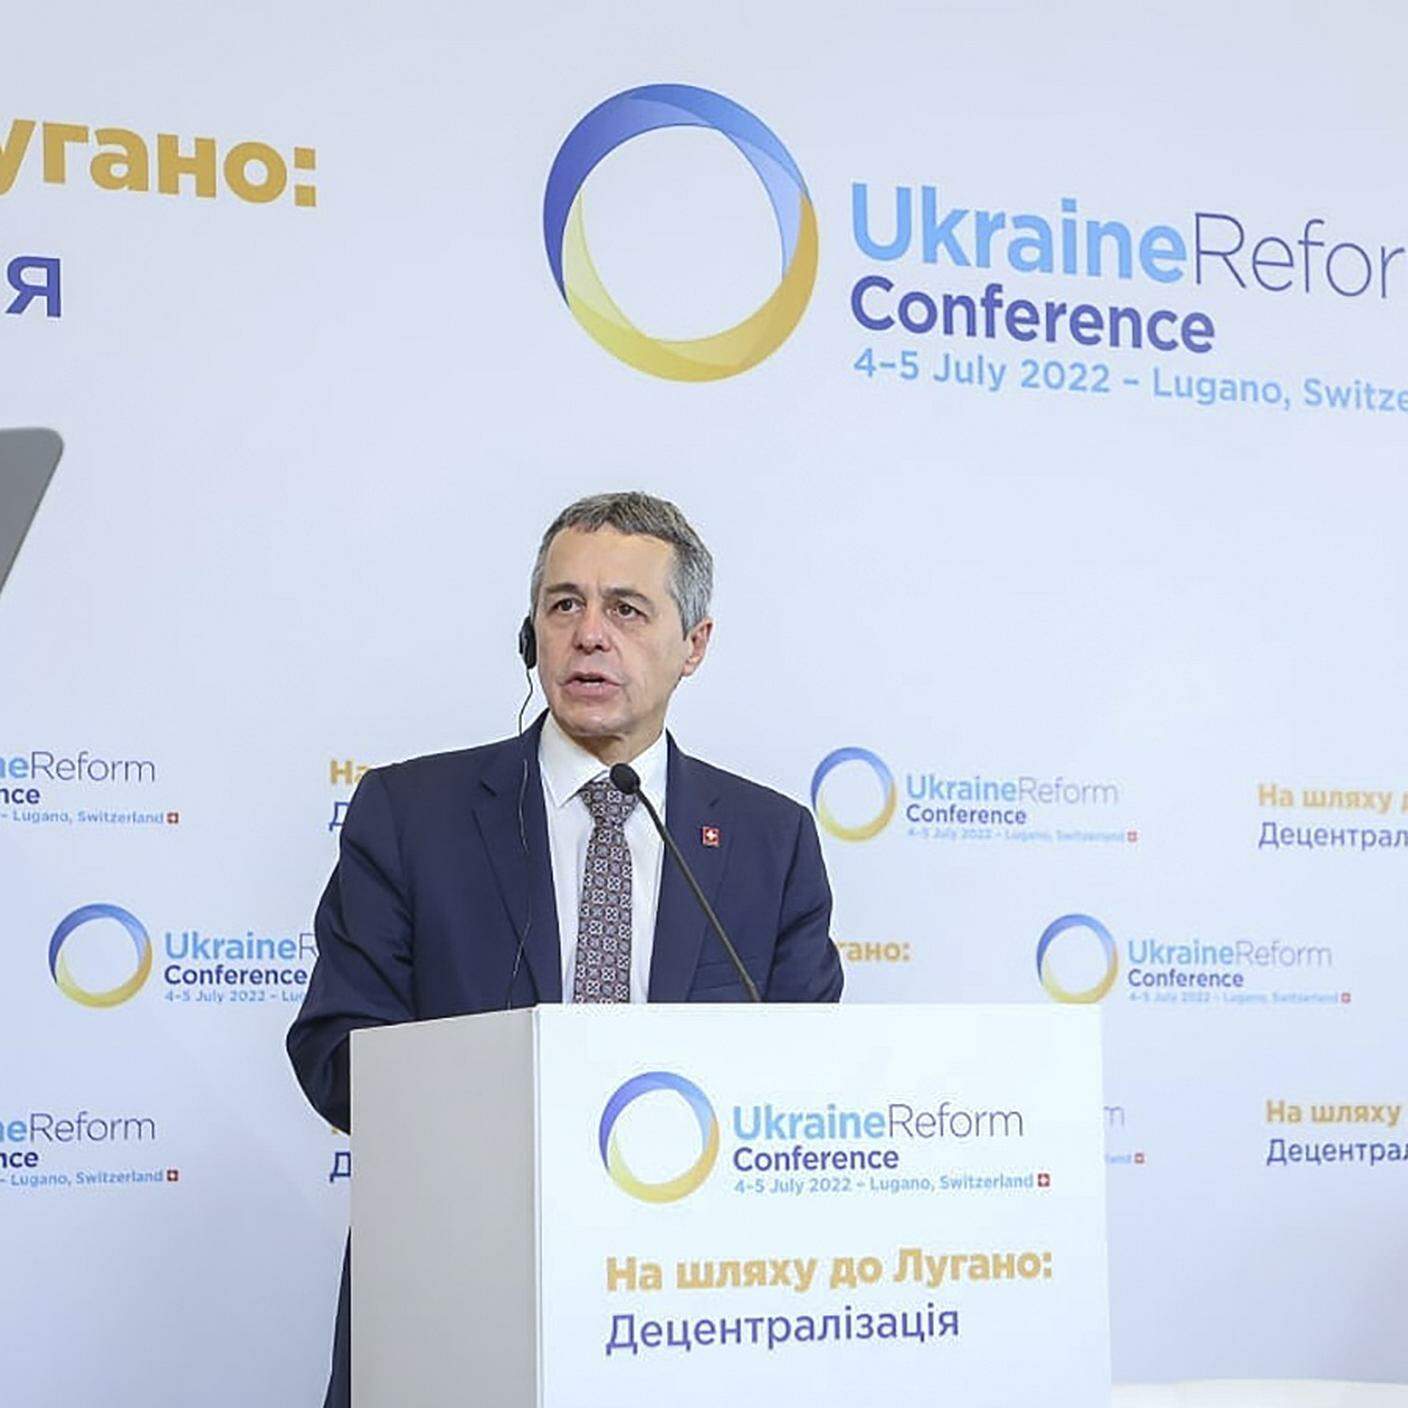 Conferenza sulla ricostruzione dell'Ucraina (Ukraine Recovery Conference), Lugano